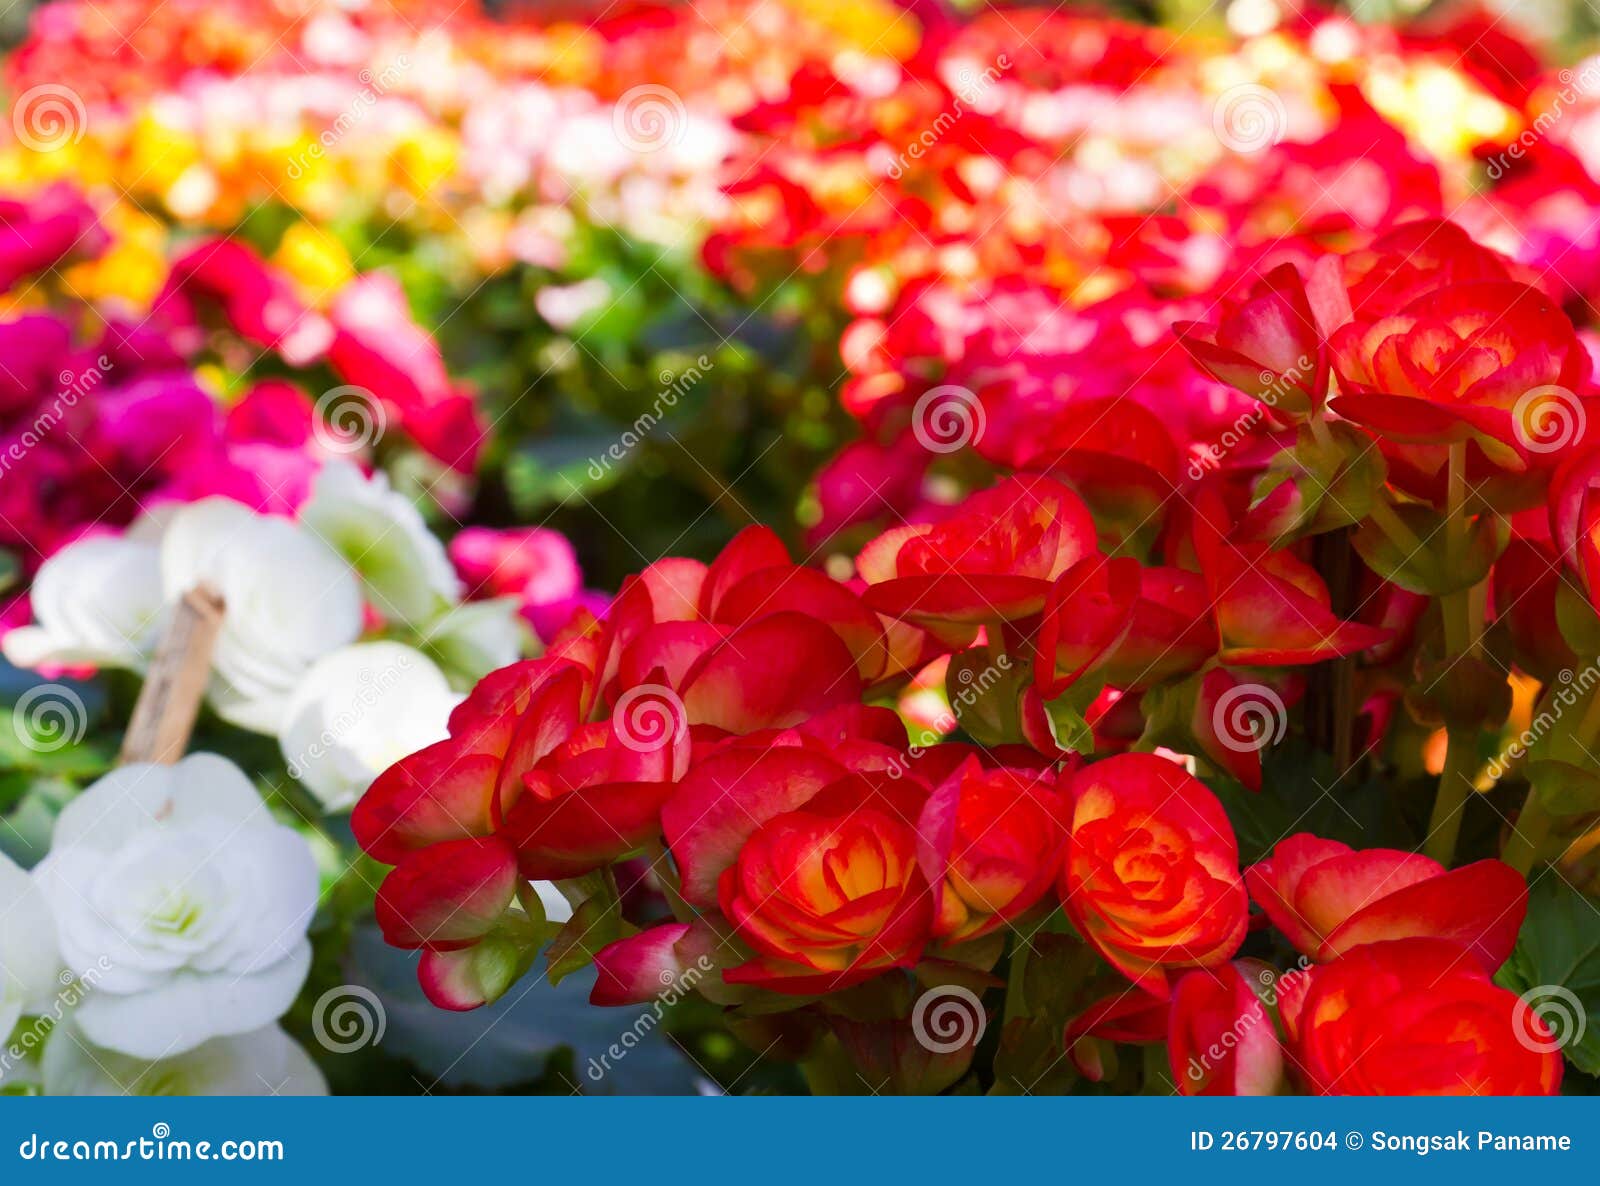 Beautiful Flower Garden Photography